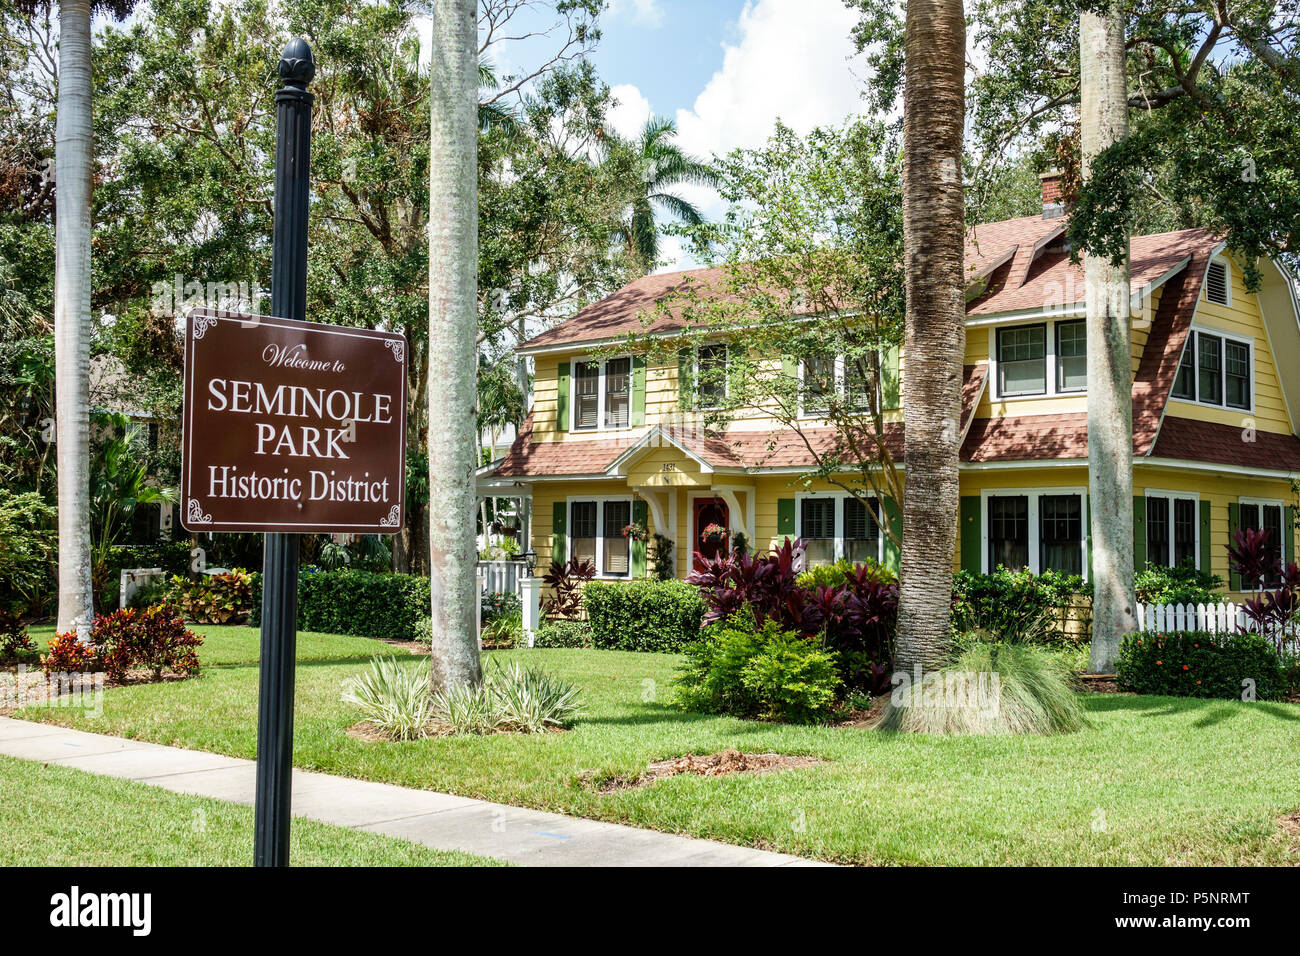 Fort Ft. Myers Florida, Seminole Park Historic District, Nachbarschaft, Haus Häuser Häuser Residenz, außen, Vorgarten, Schild, FL170925105 Stockfoto